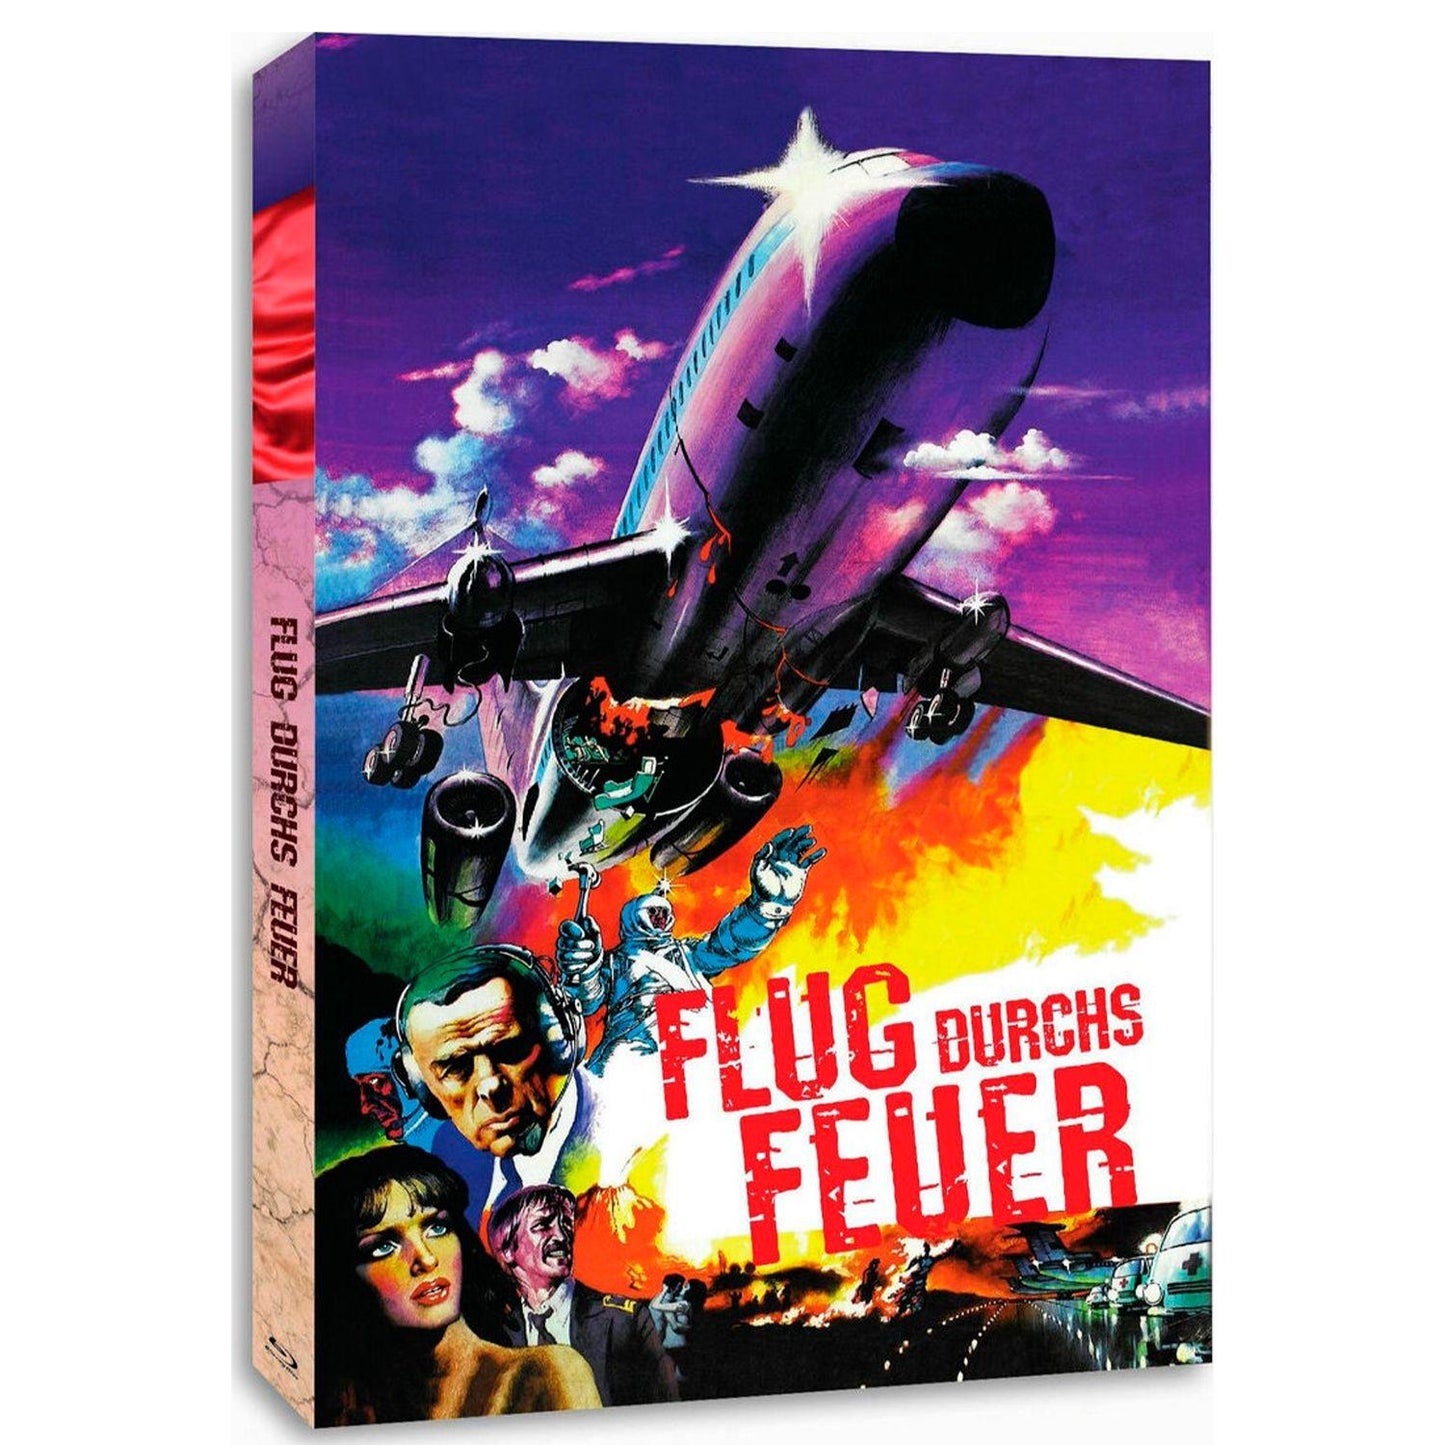 Экипаж (1979) (Blu-ray) Limited Digipak Edition [Cover A]